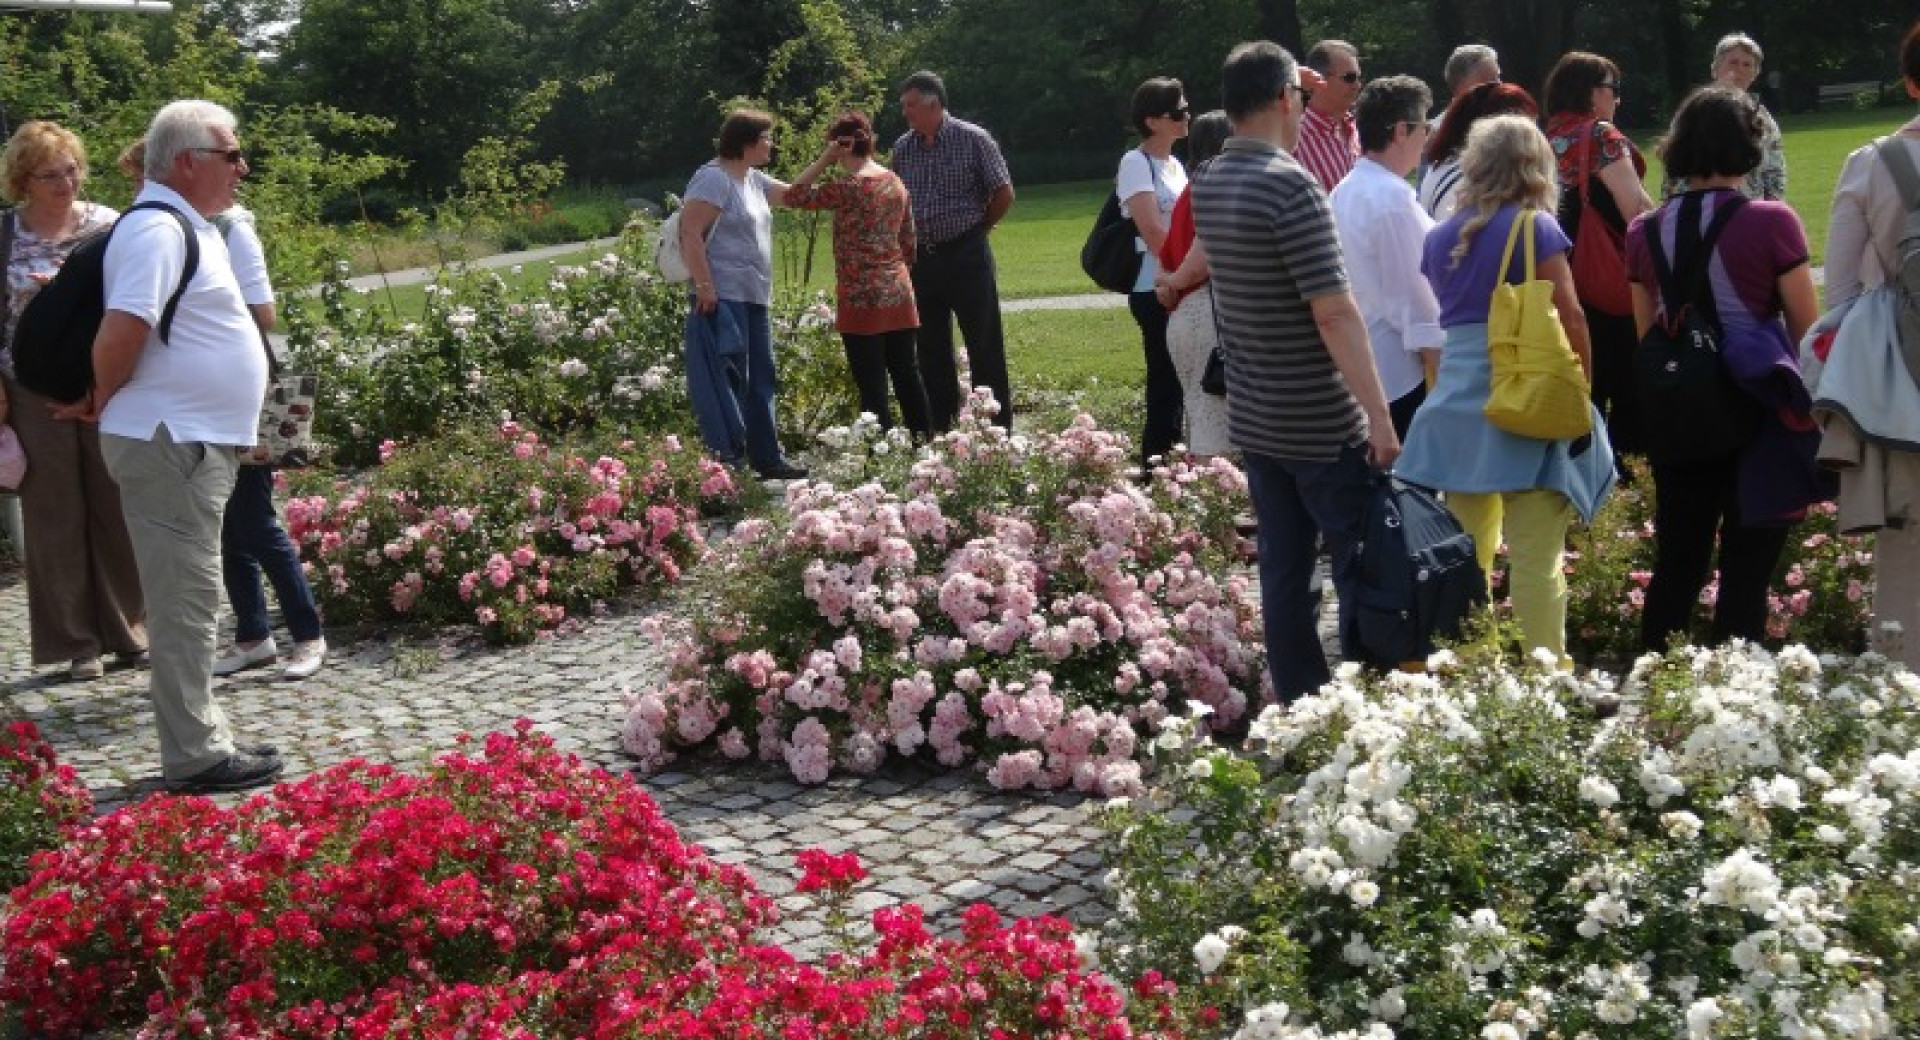 Štiri kandidatke za vrtnico Ljubljana so že vzcvetele – rozarij je julija res vreden obiska